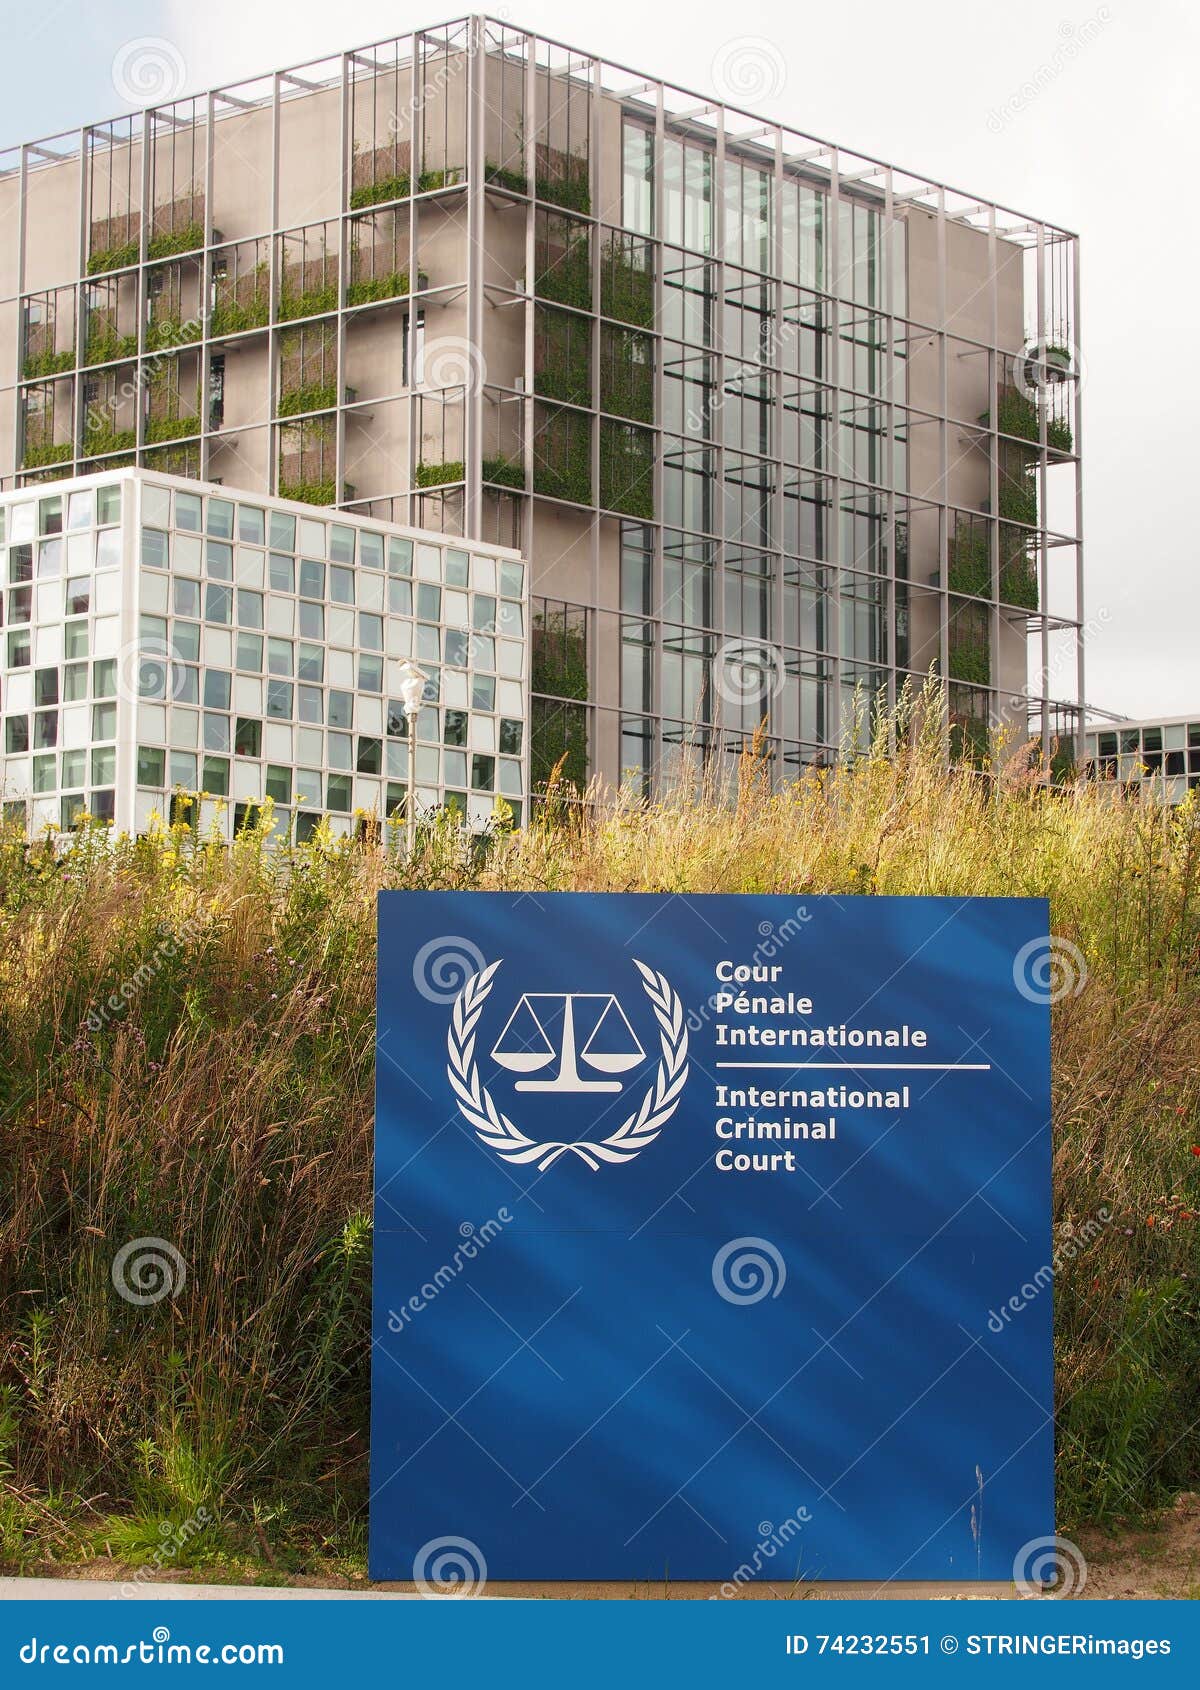 La muestra internacional de la entrada del Tribunal Penal y el nuevo ICC que construyen. La Haya, Países Bajos - 5 de julio de 2016: La muestra internacional de la entrada del Tribunal Penal y los nuevos 2016 abrieron ICC que construía